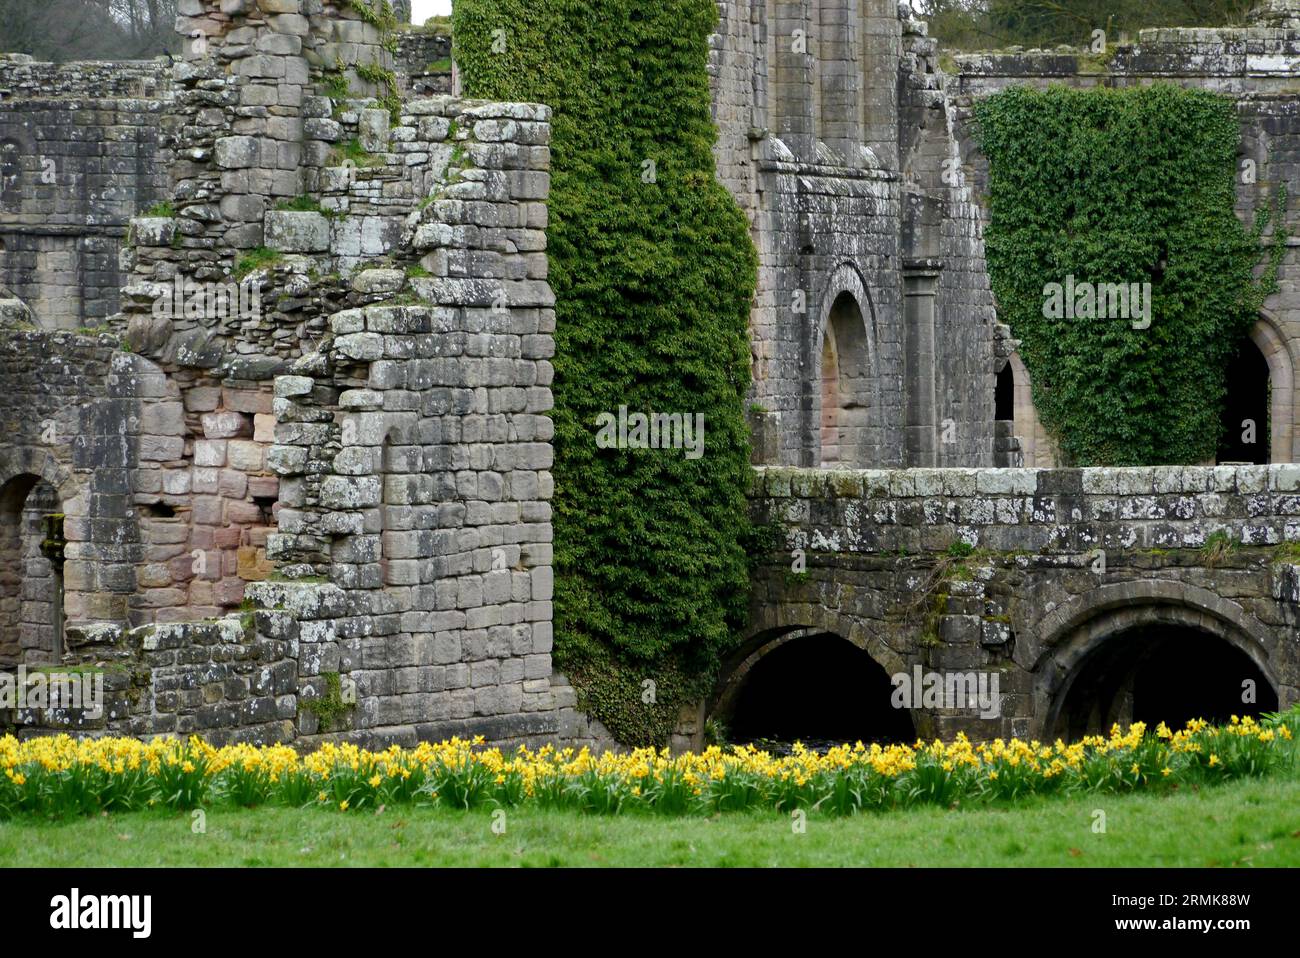 Narcisi primaverili presso un ponte ad arco nelle rovine dell'abbazia di Fountains, il monastero cistercense medievale nel North Yorkshire, Inghilterra, Regno Unito. Foto Stock